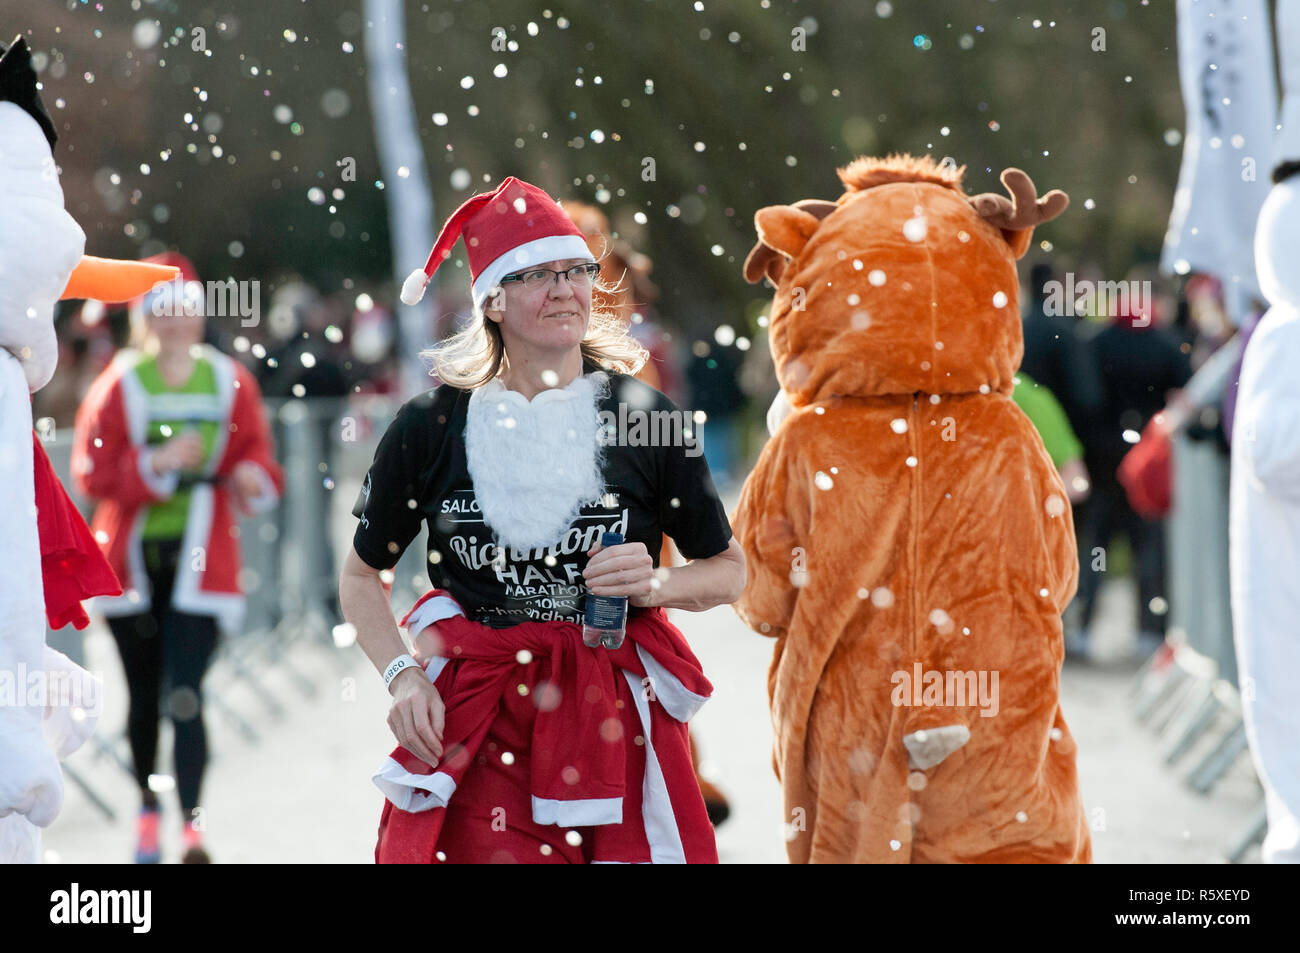 Ein Teilnehmer in einem Santa Kostüm gesehen an einem Teilnehmer an einem Tiger Kostüm während des Laufs gekleidet. Läufer verkleidet als Weihnachtsmann in einer großen Run im Victoria Park teil. Die Teilnehmer hatten die Wahl zwischen 5 km und 10 km Strecke durch den Park und der Zweck der Veranstaltung war es, Geld für verschiedene Wohltätigkeitsorganisationen zu erhöhen. Stockfoto